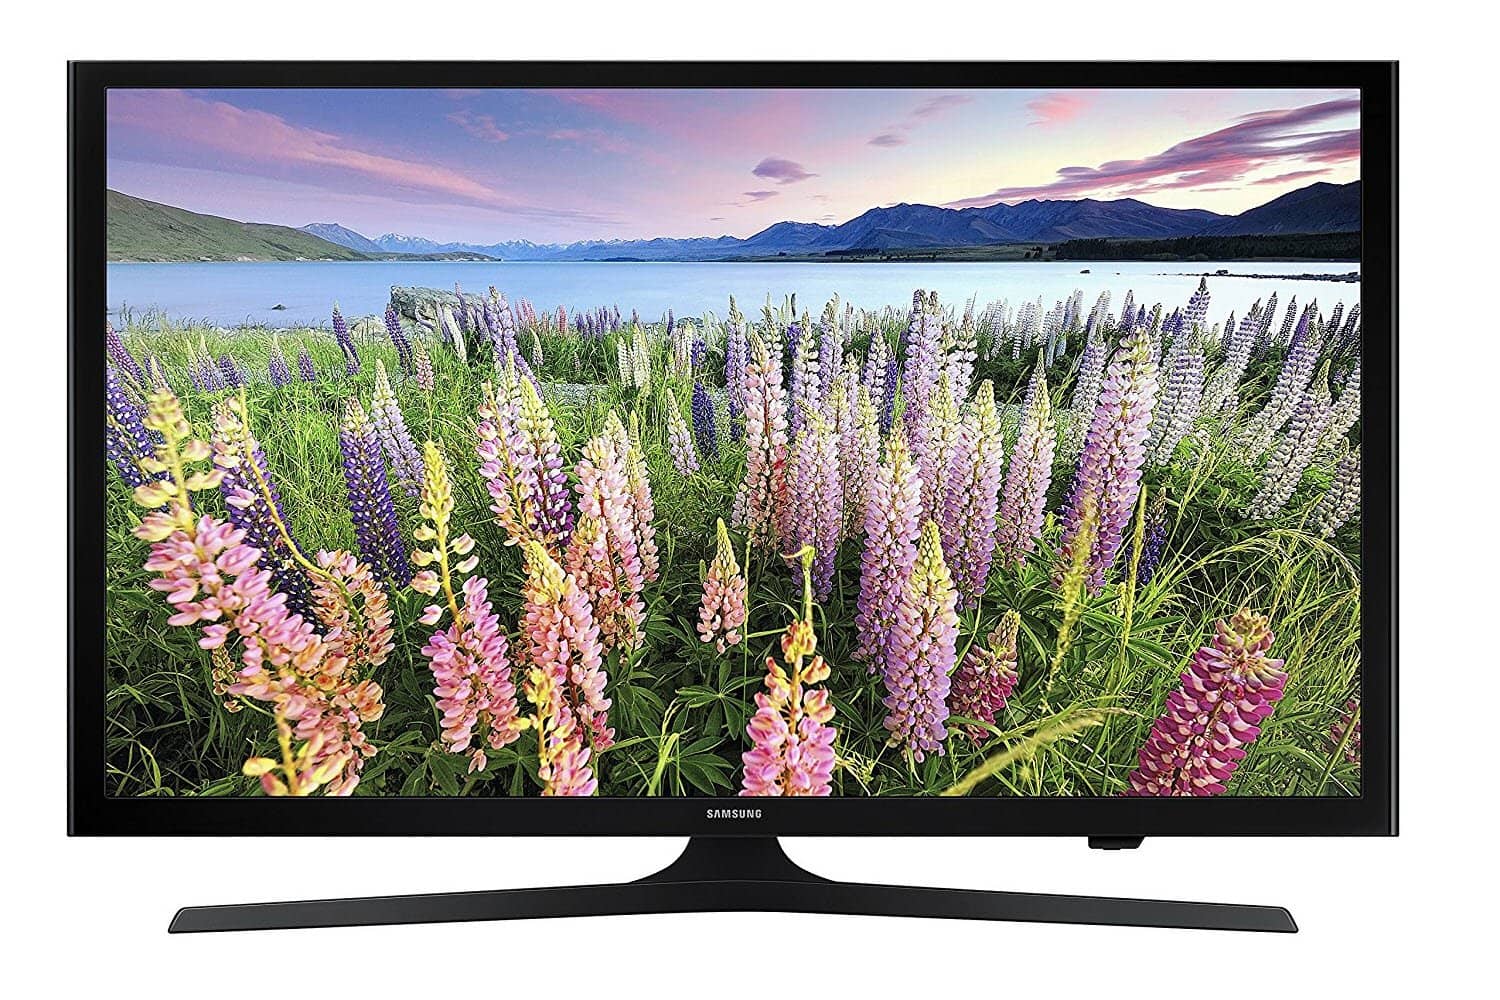 Samsung UN48J5200 48-Inch 1080p Smart LED TV